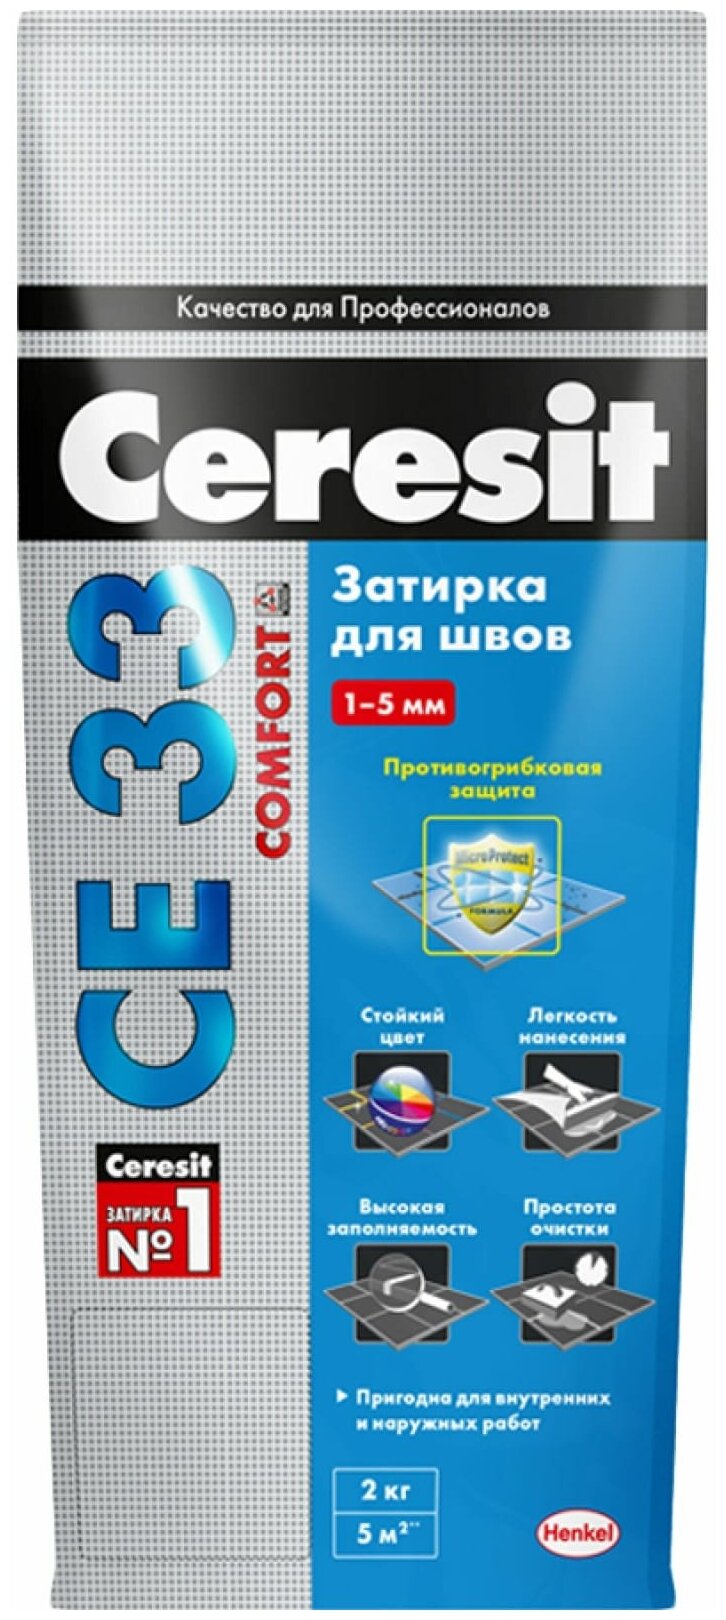  Ceresit CE 33 Comfort 04, -, 2 